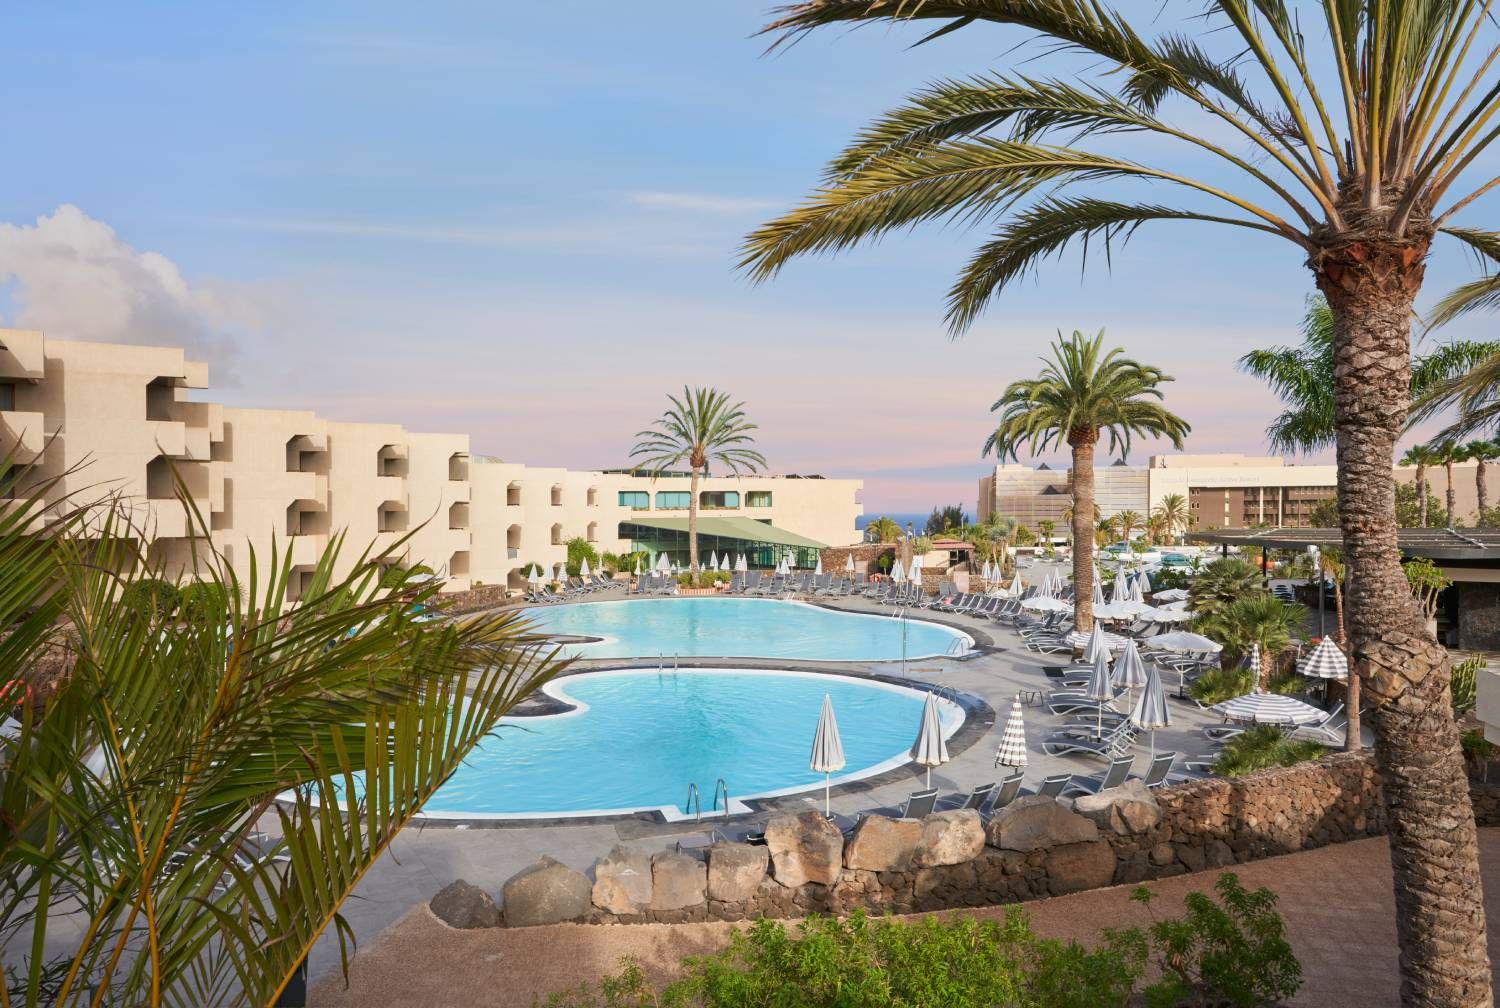 Un hotelazo que se encuentra en Lanzarote, uno de los grandes paraísos de Canarias.